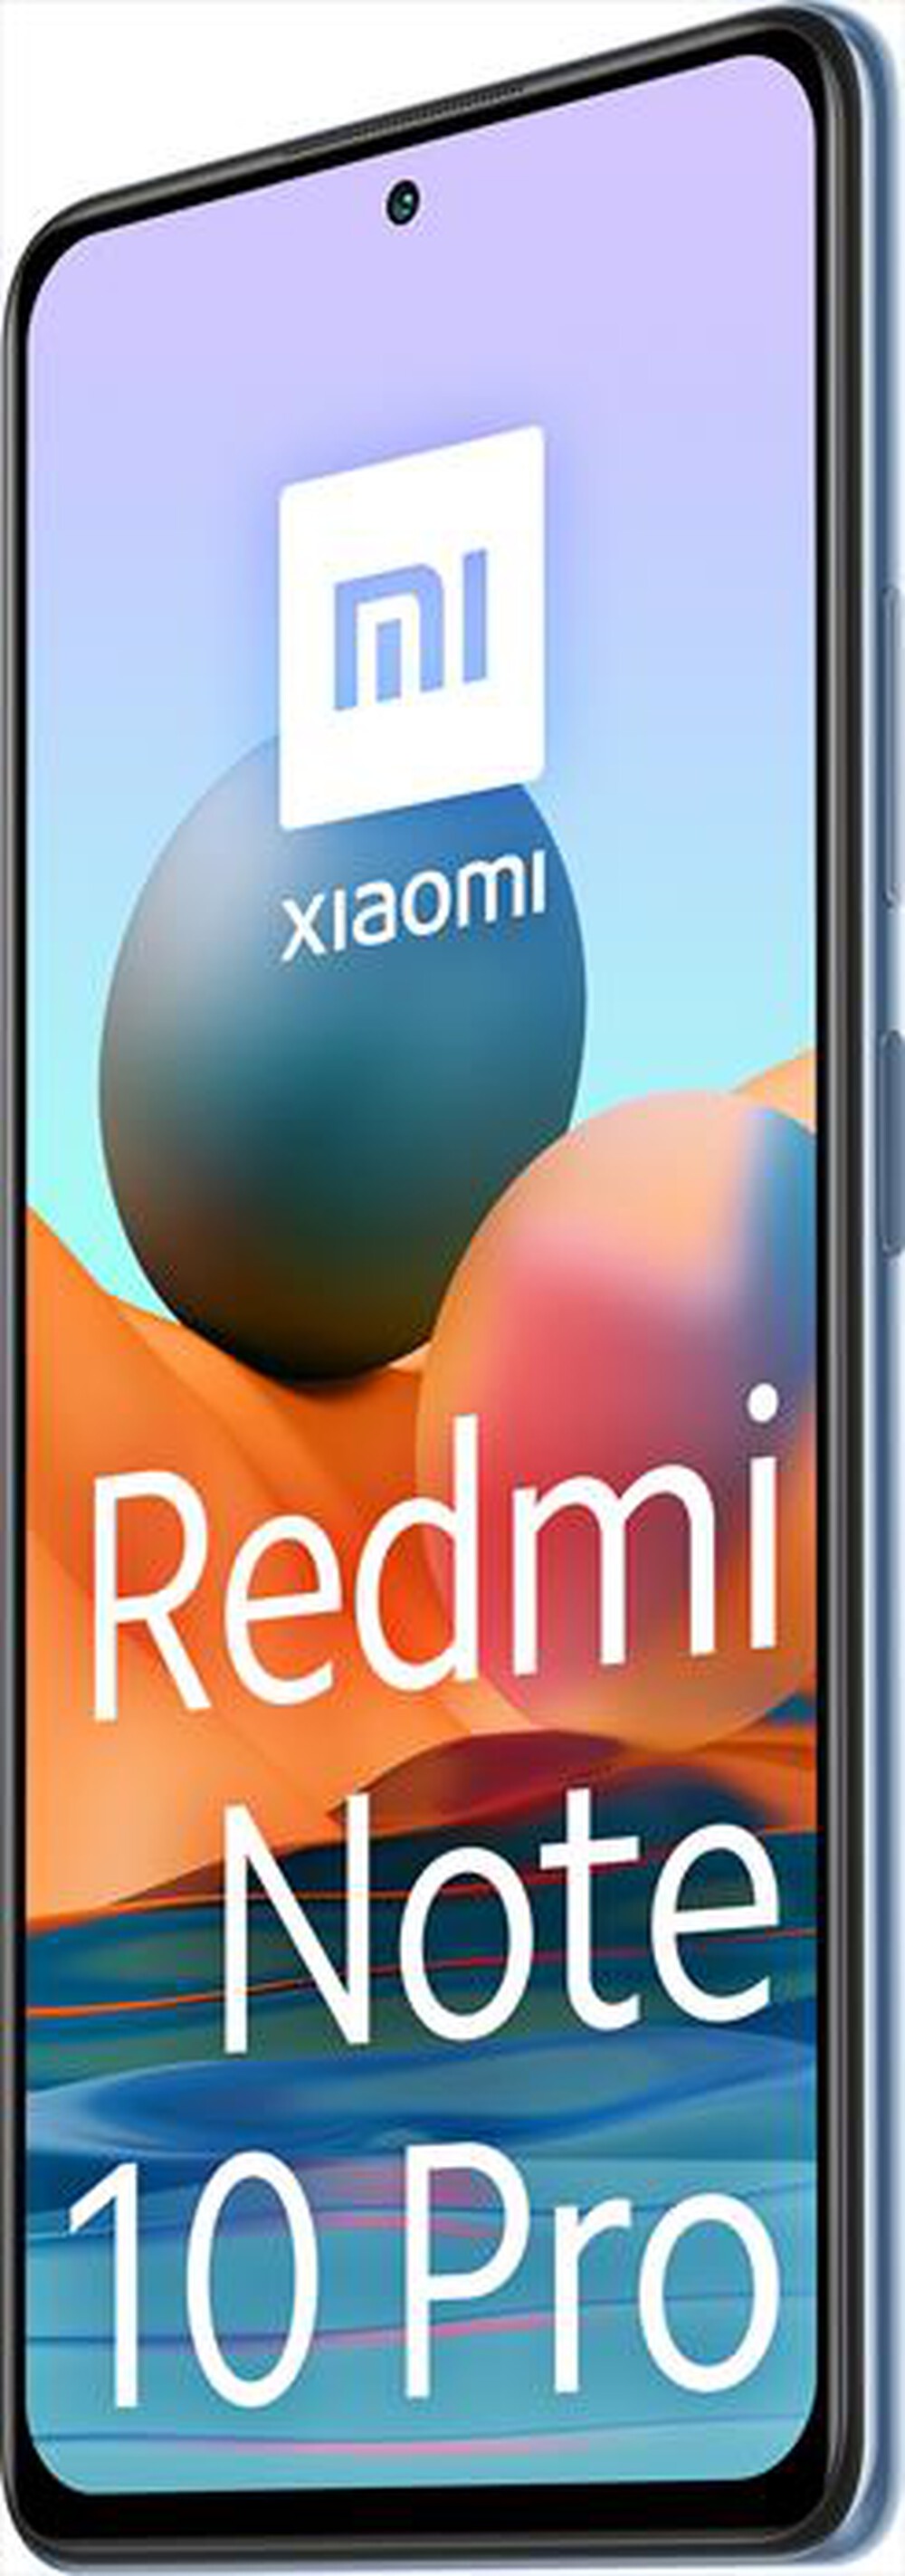 "XIAOMI - SMARTPHONE REDMI NOTE 10 PRO 6+128GB-Glacier Blue"